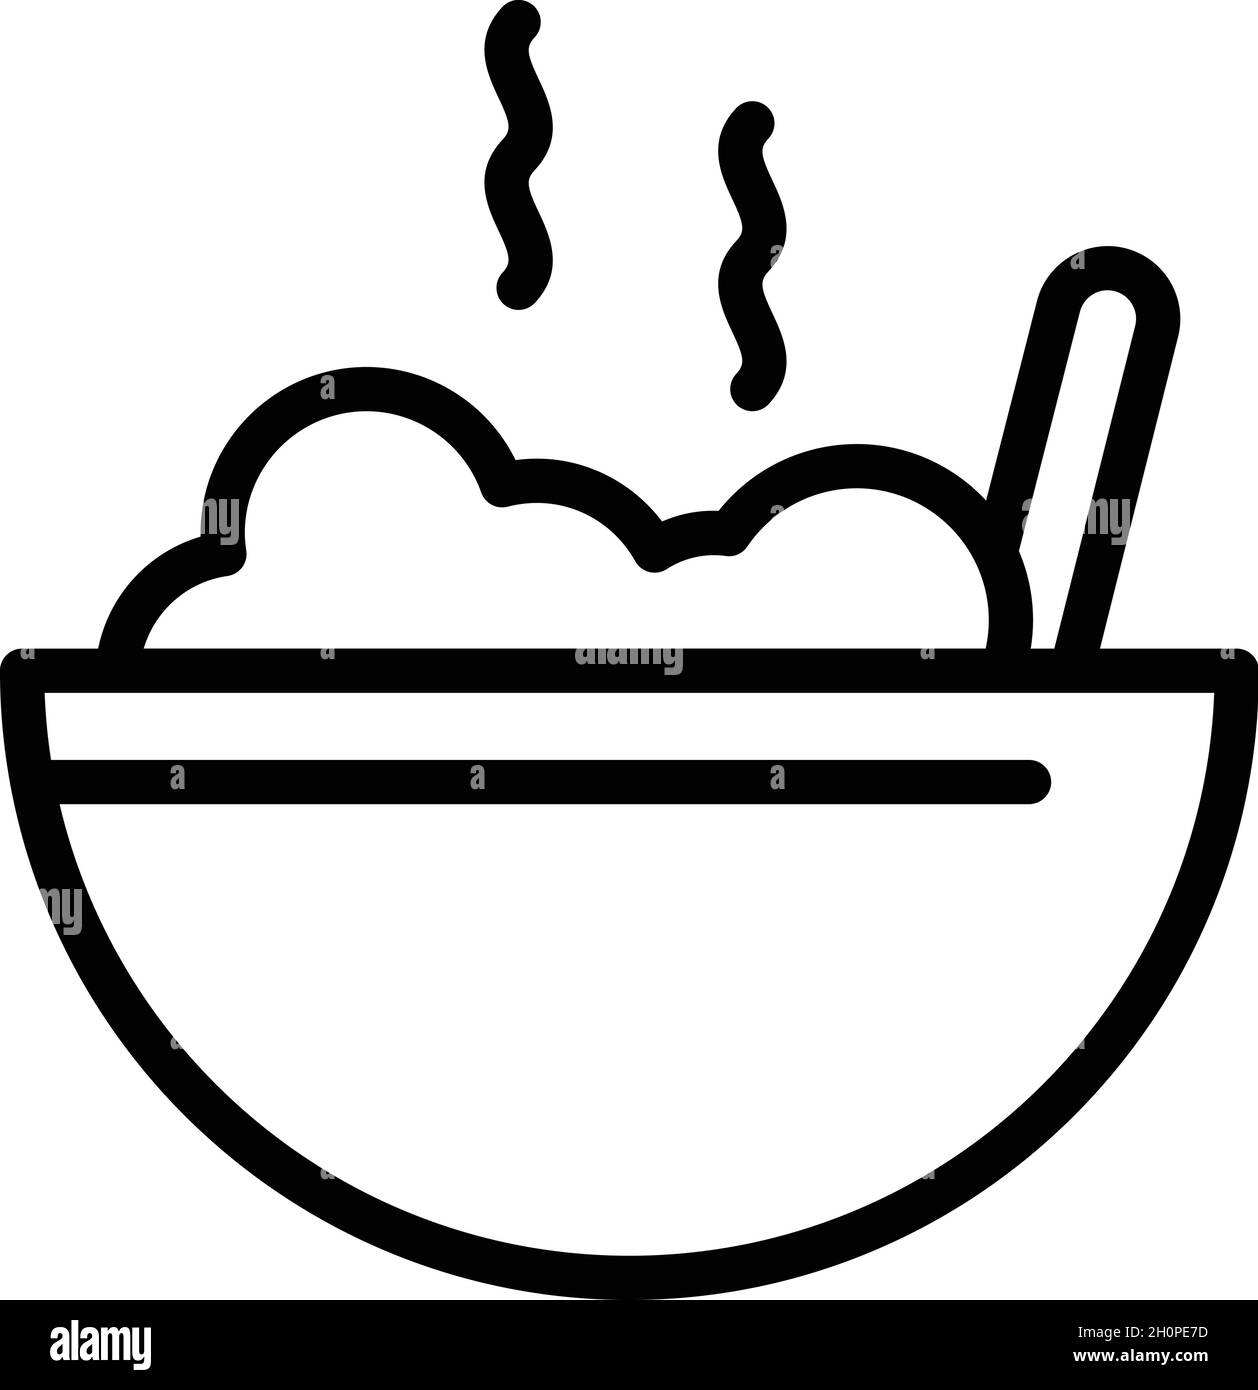 Umrissvektor für das Symbol für heiße Lebensmittel in der Schüssel. Suppenmahlzeit. Löffelbecher Stock Vektor